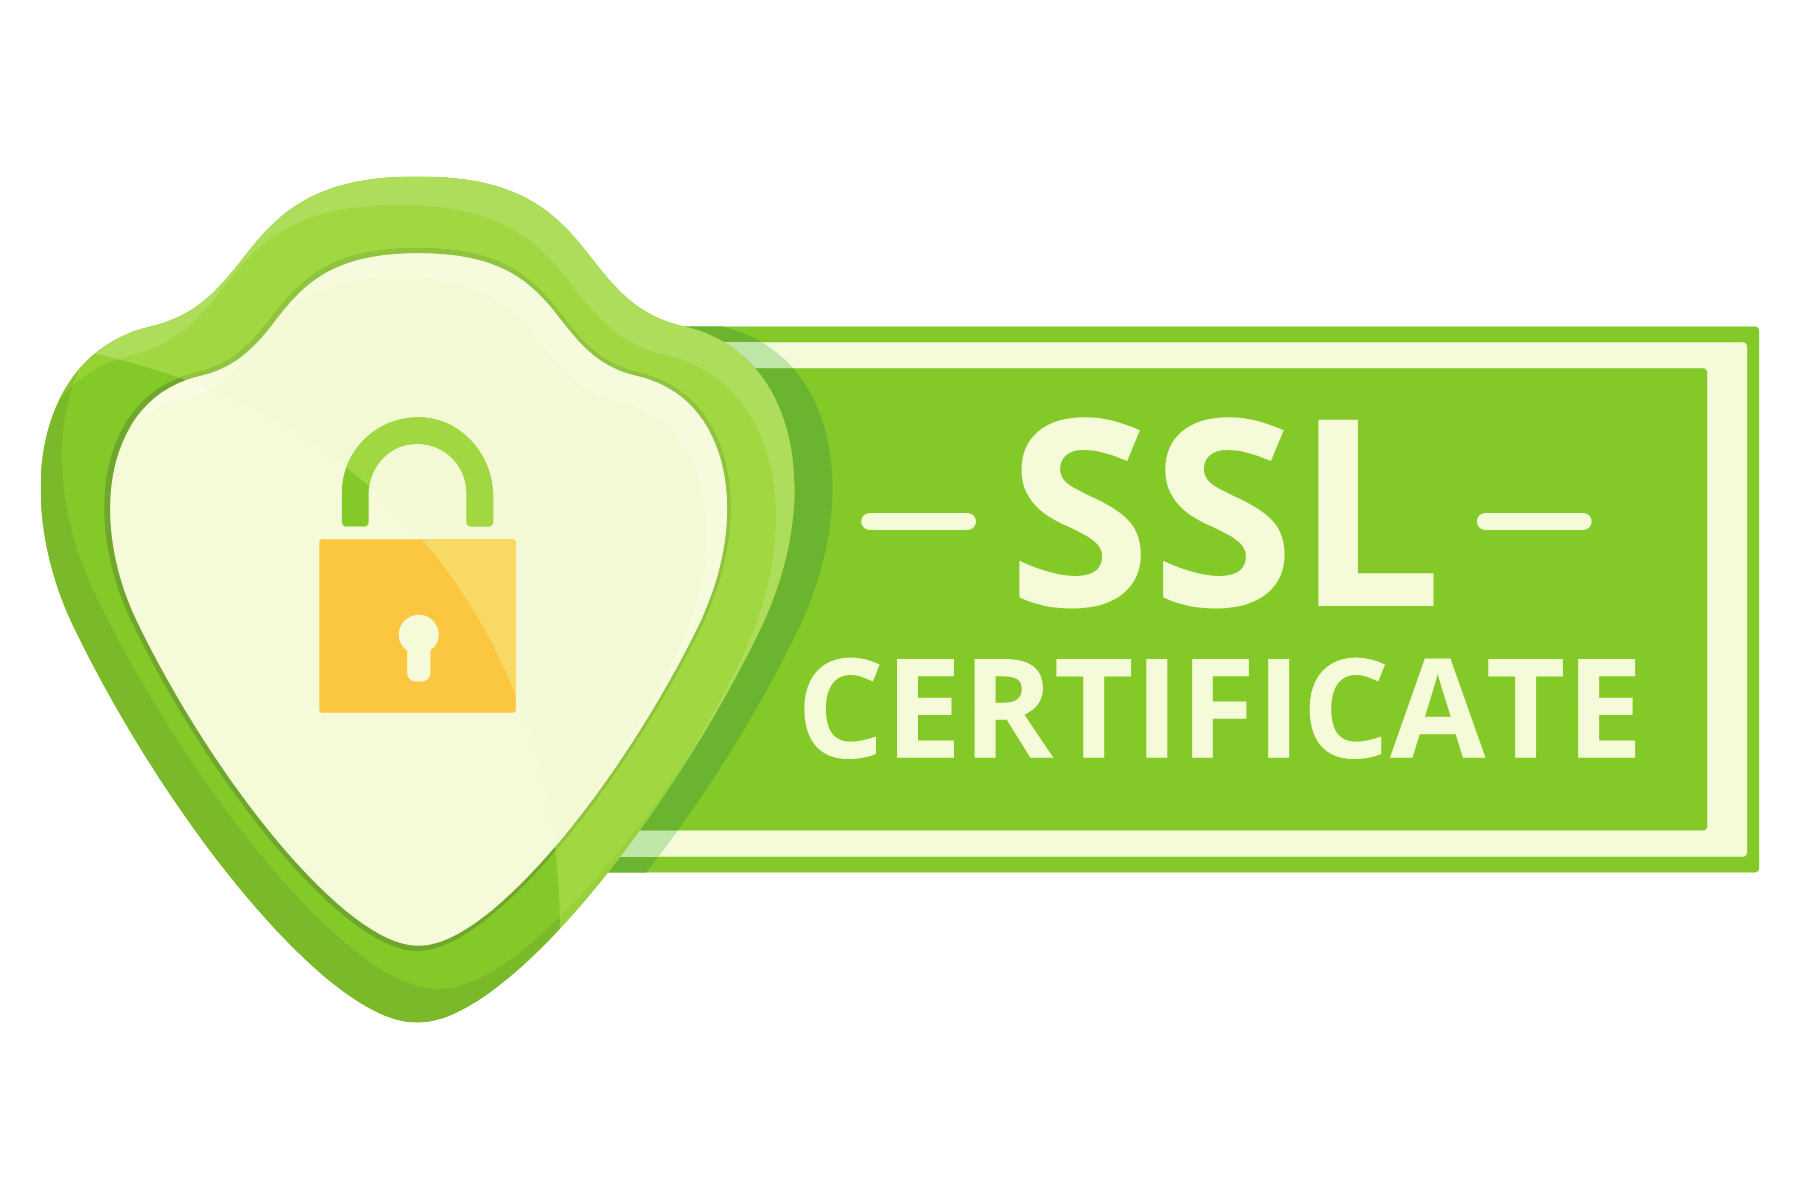 SSL-Zertifikat: Stellt eine sichere Verbindung zwischen Website und Besucher sicher